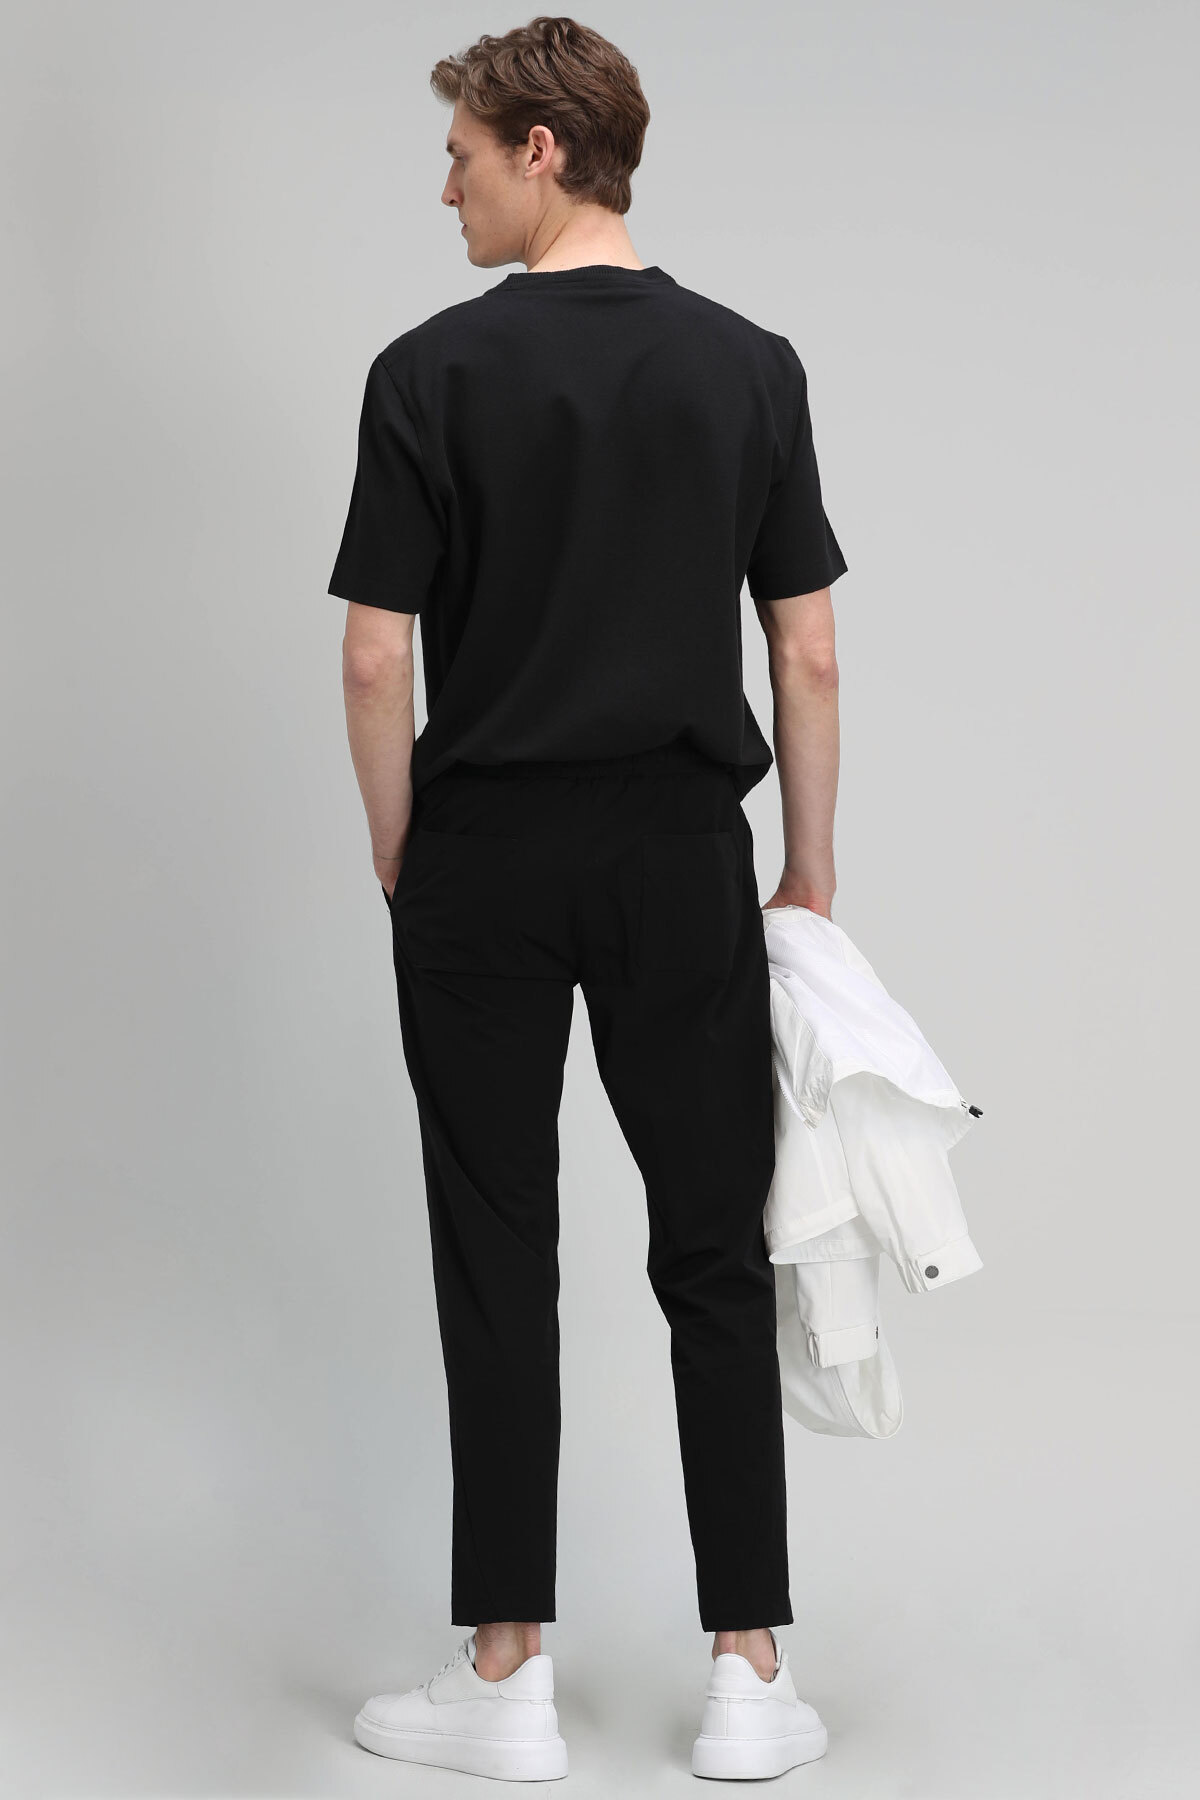 Manolo Spor Erkek Chino Pantolon Tailored Fit Siyah